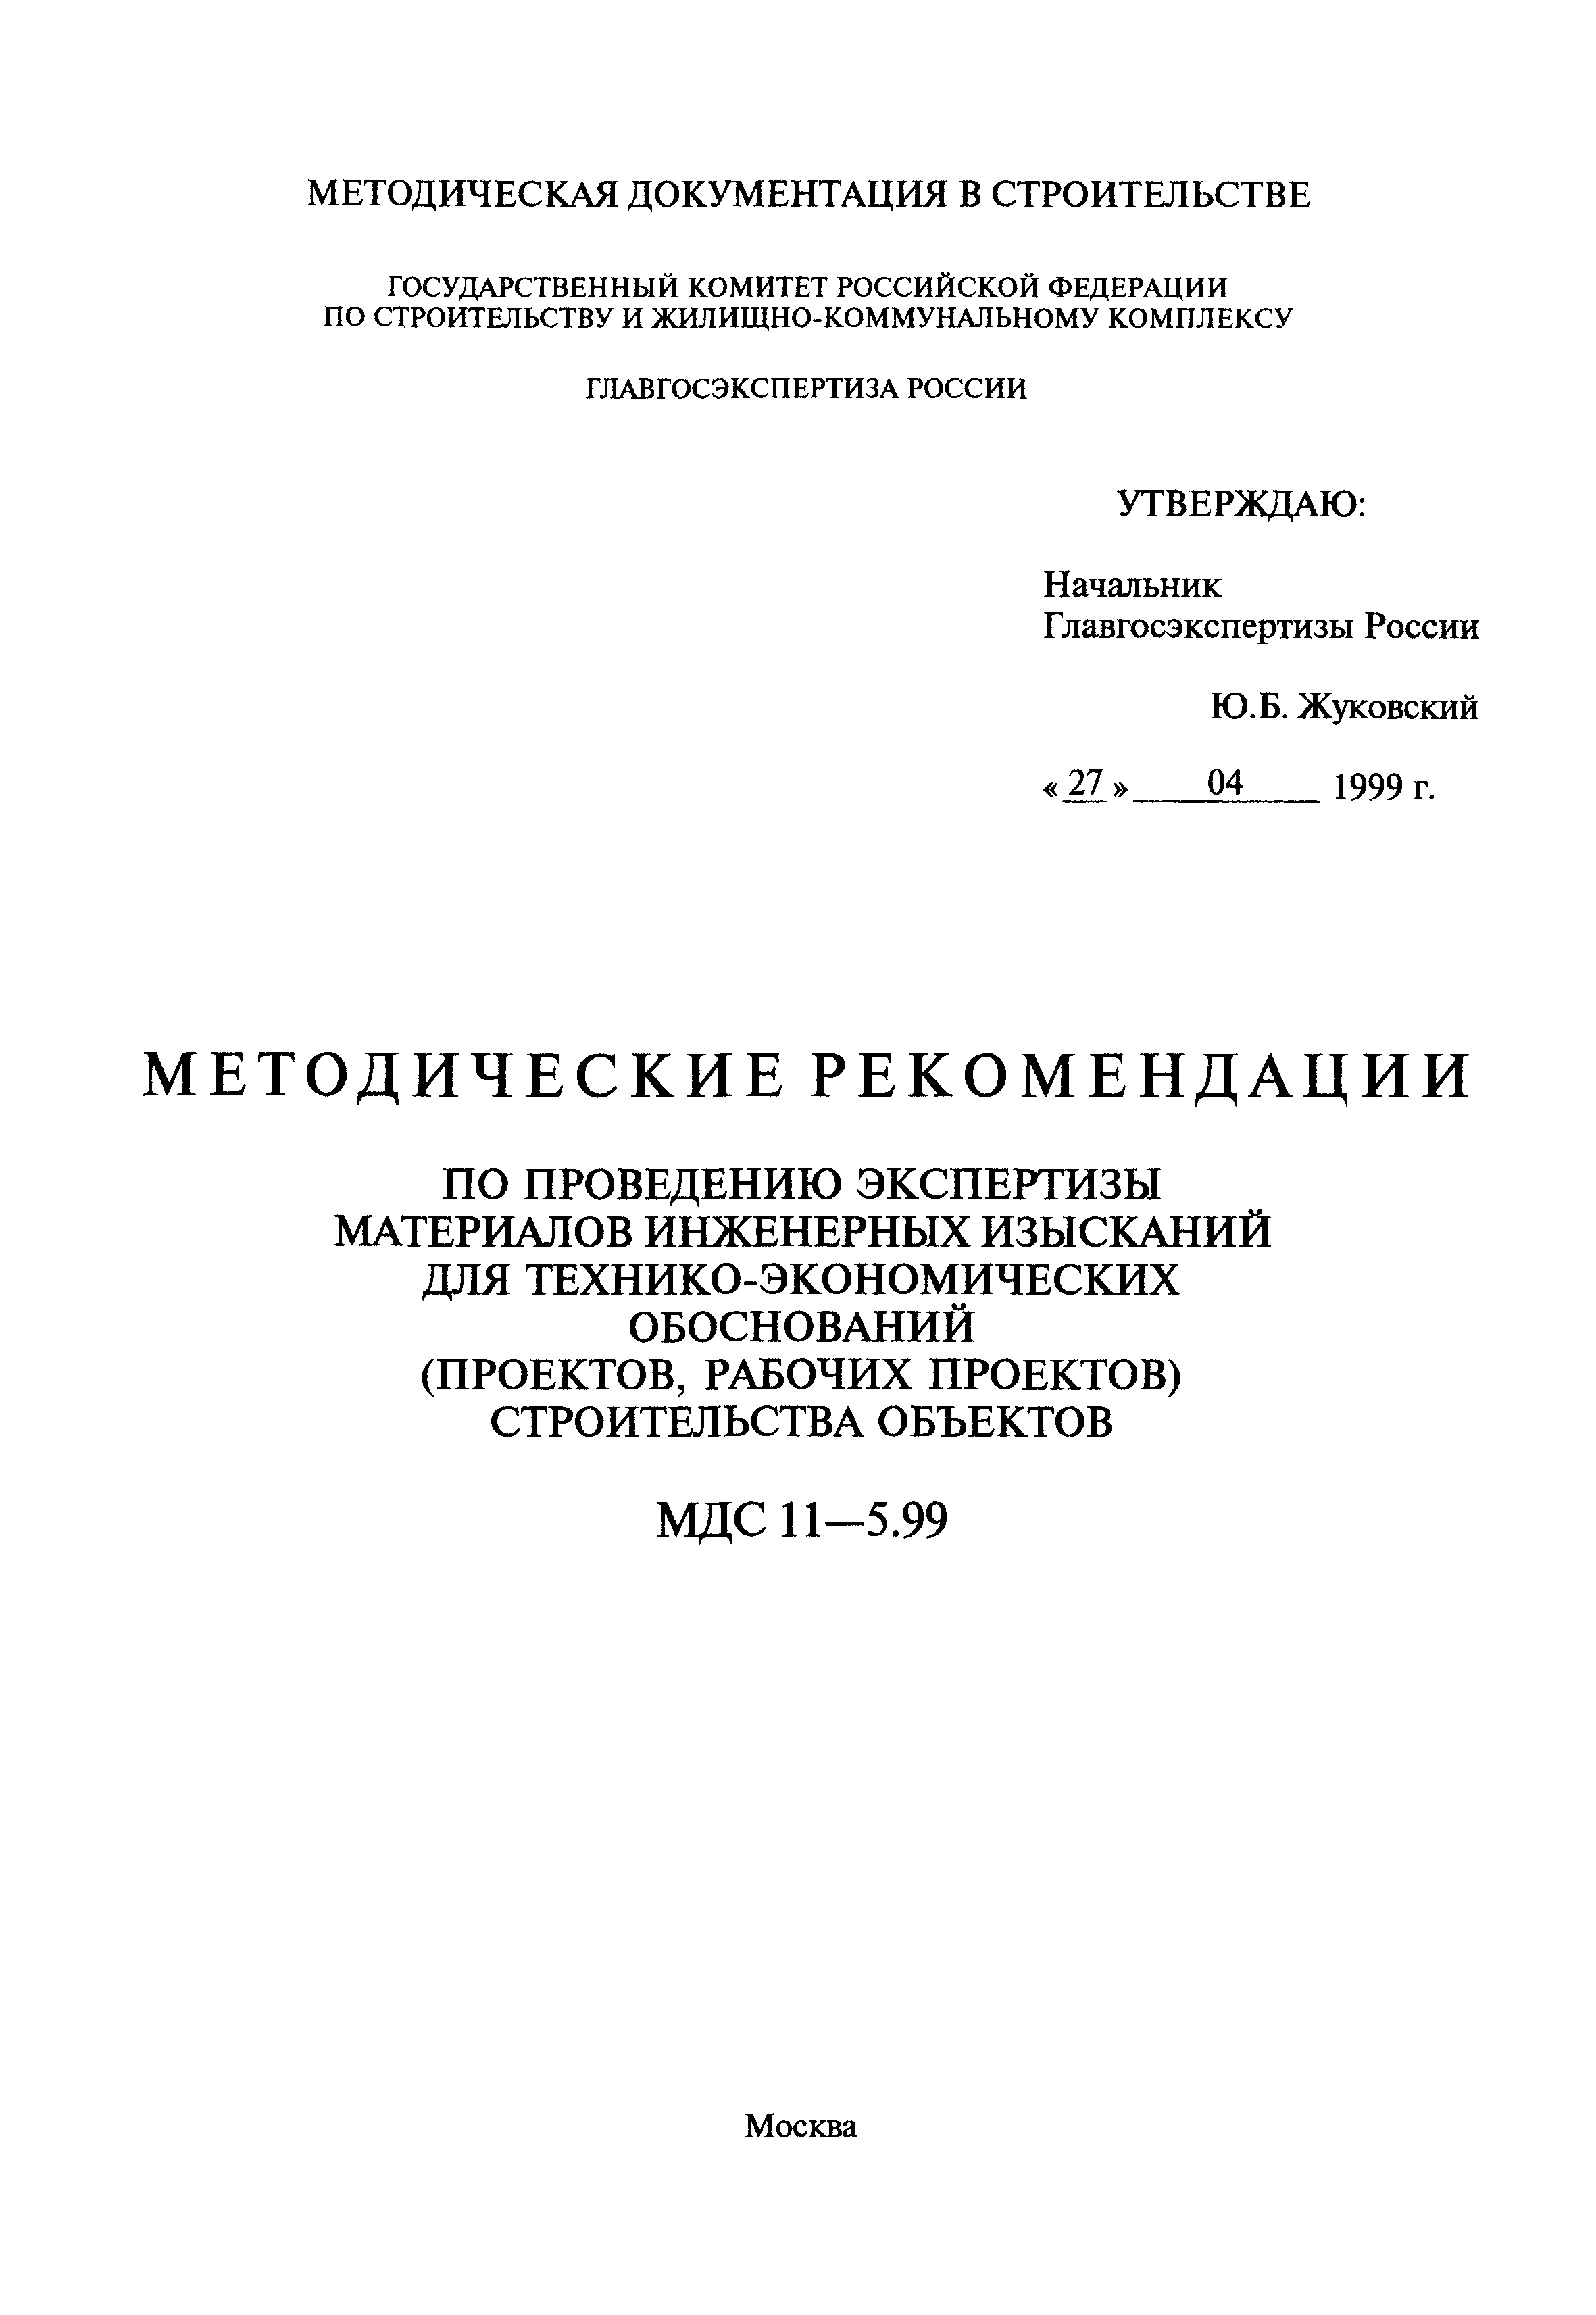 МДС 11-5.99